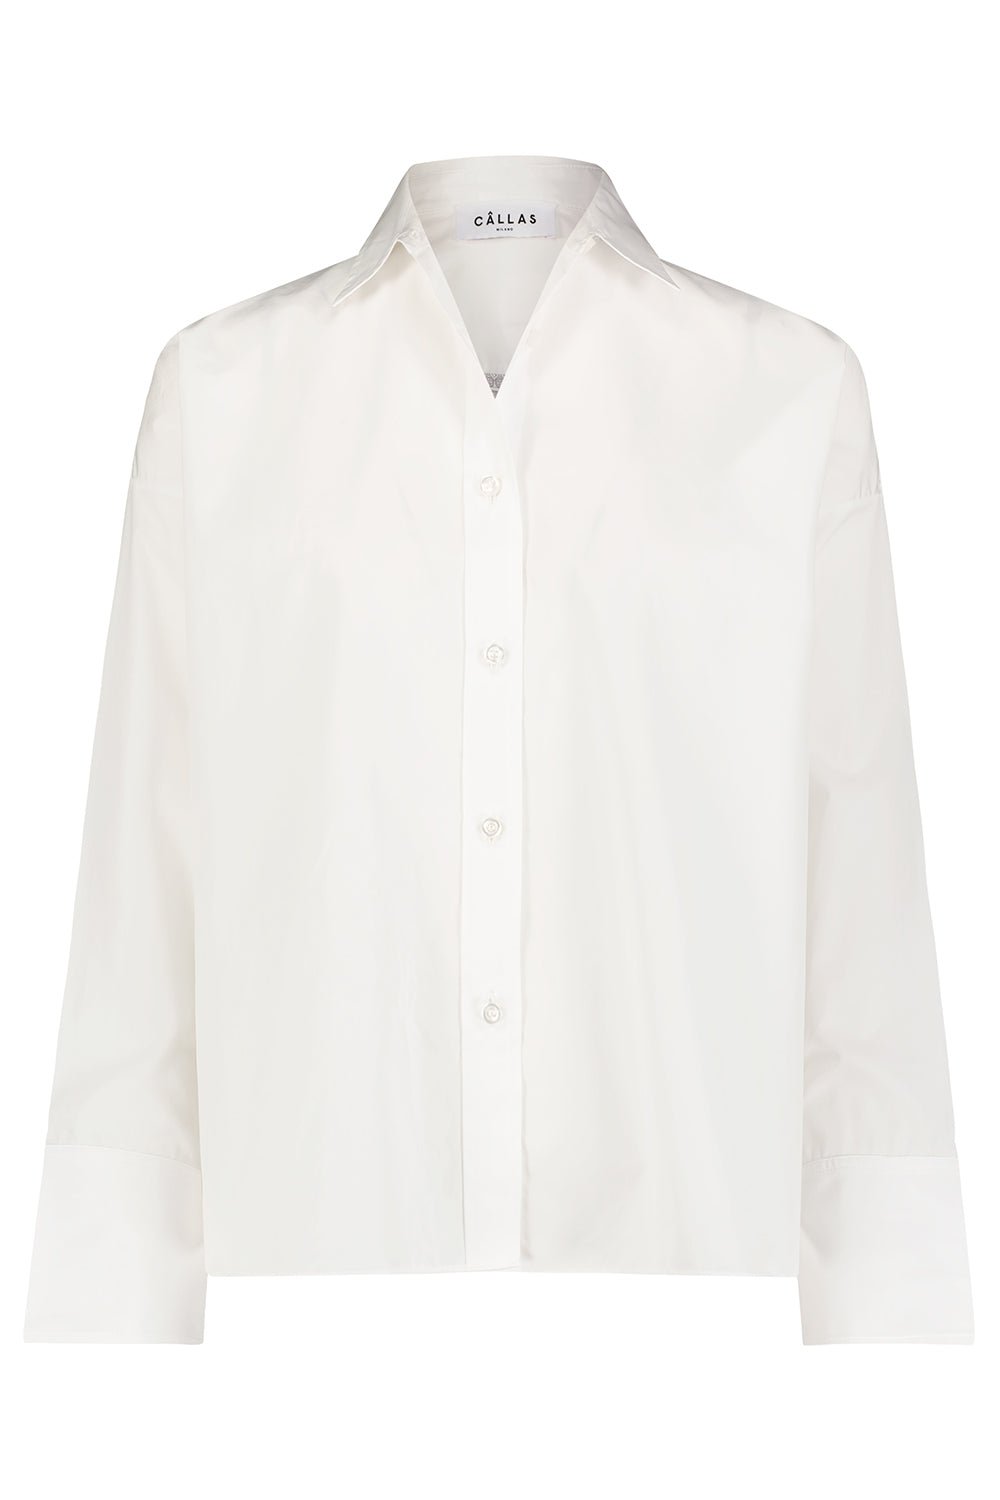 CALLAS MILANO-Sirene Shirt - White-